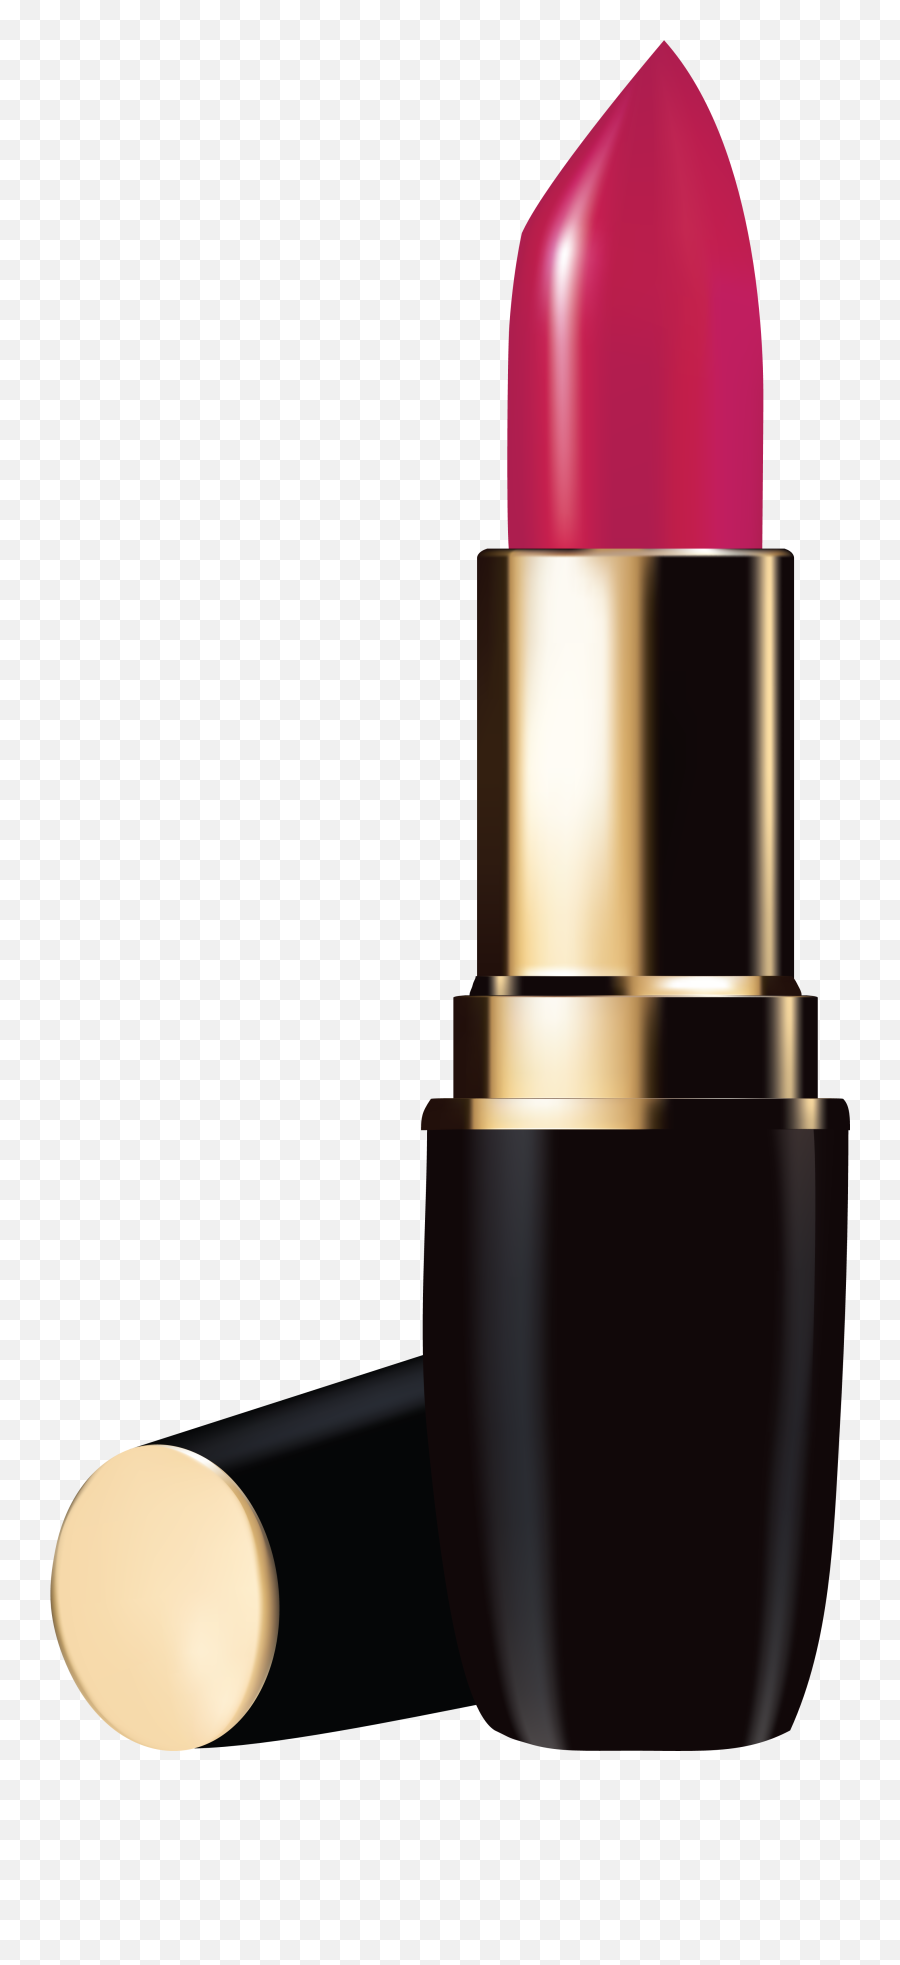 Lipstick Download Transparent Png Image - Transparent Background Lipstick Clipart,Lipstick Transparent Background